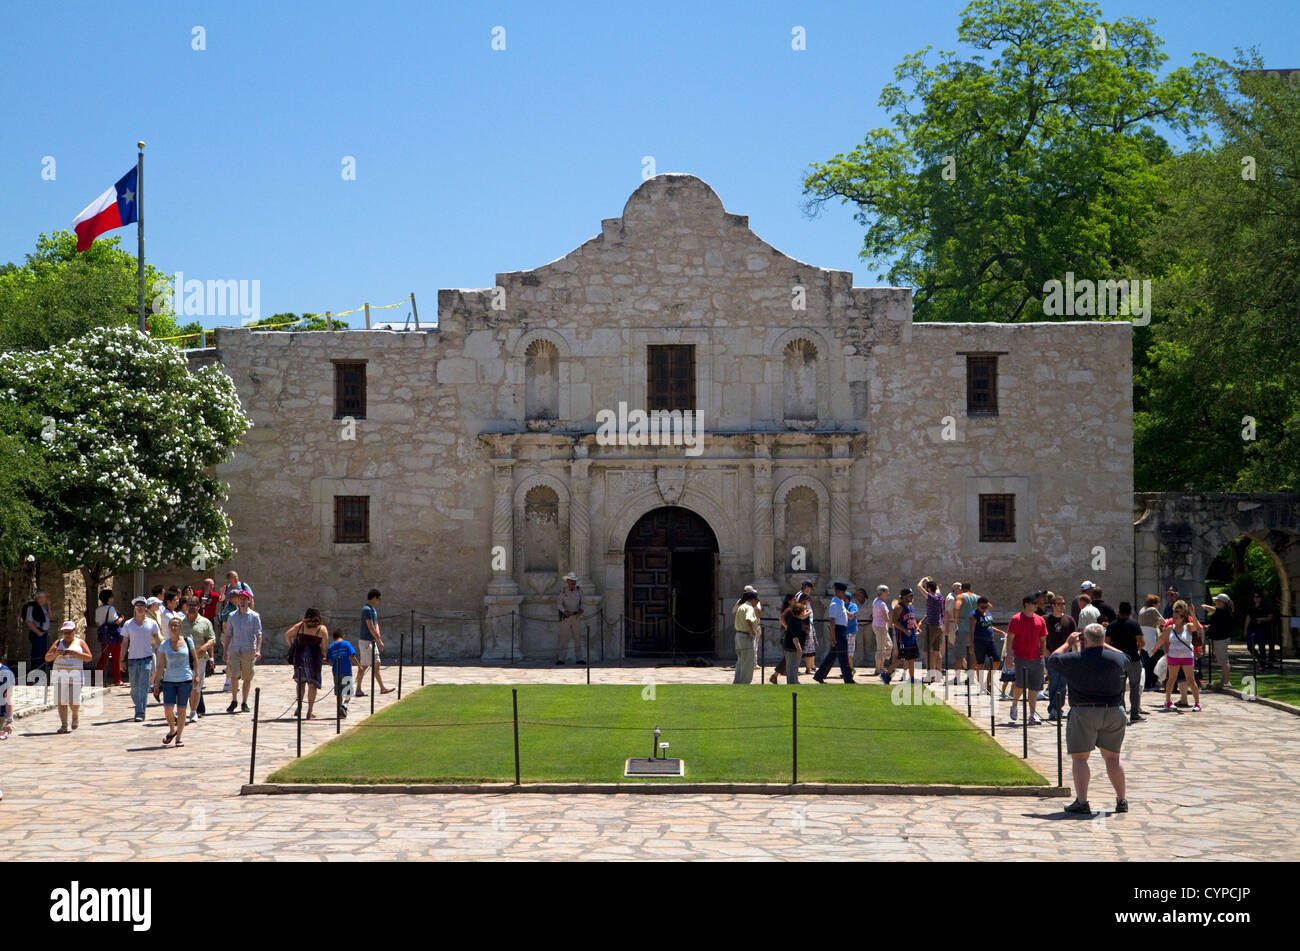 La cappella della missione di Alamo si trova nel centro cittadino di San Antonio, Texas, Stati Uniti d'America. Foto Stock